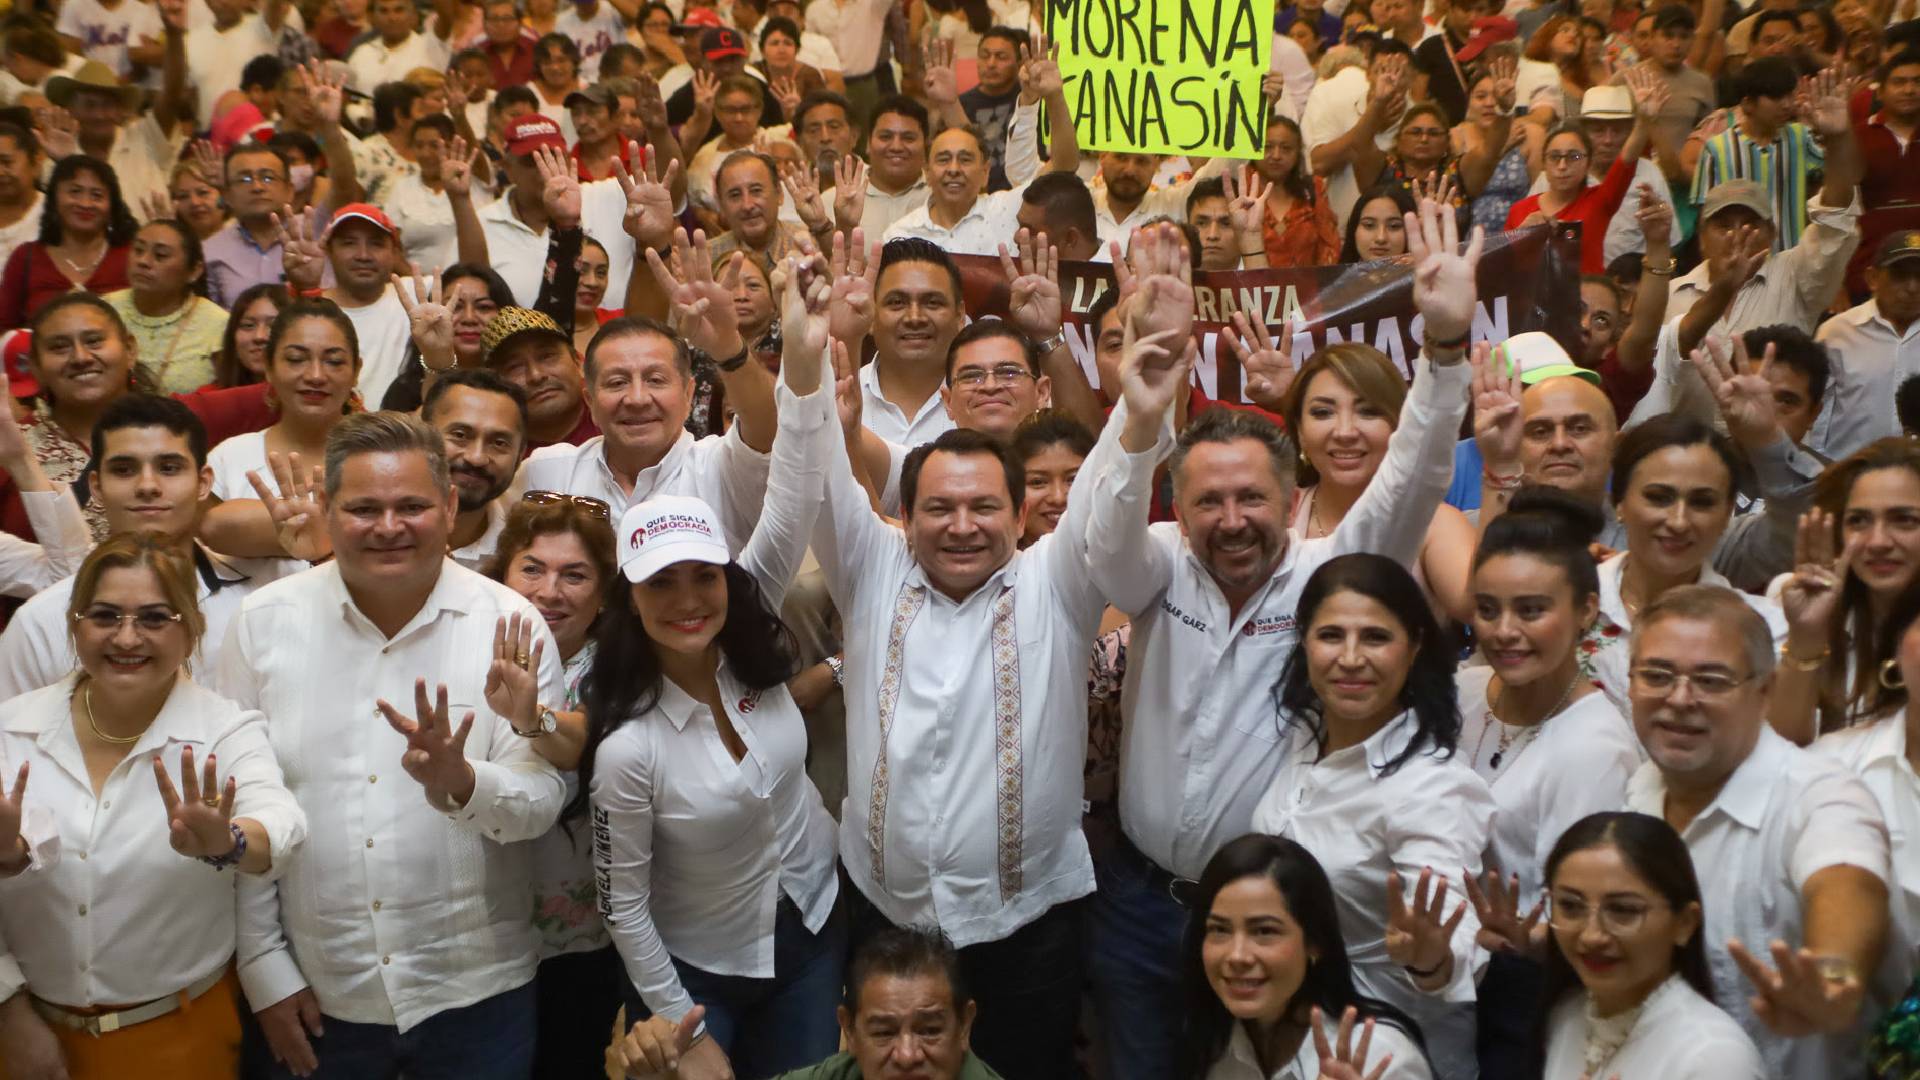 Apoyo a “Huacho” Díaz Mena la asociación “Que siga la democracia”